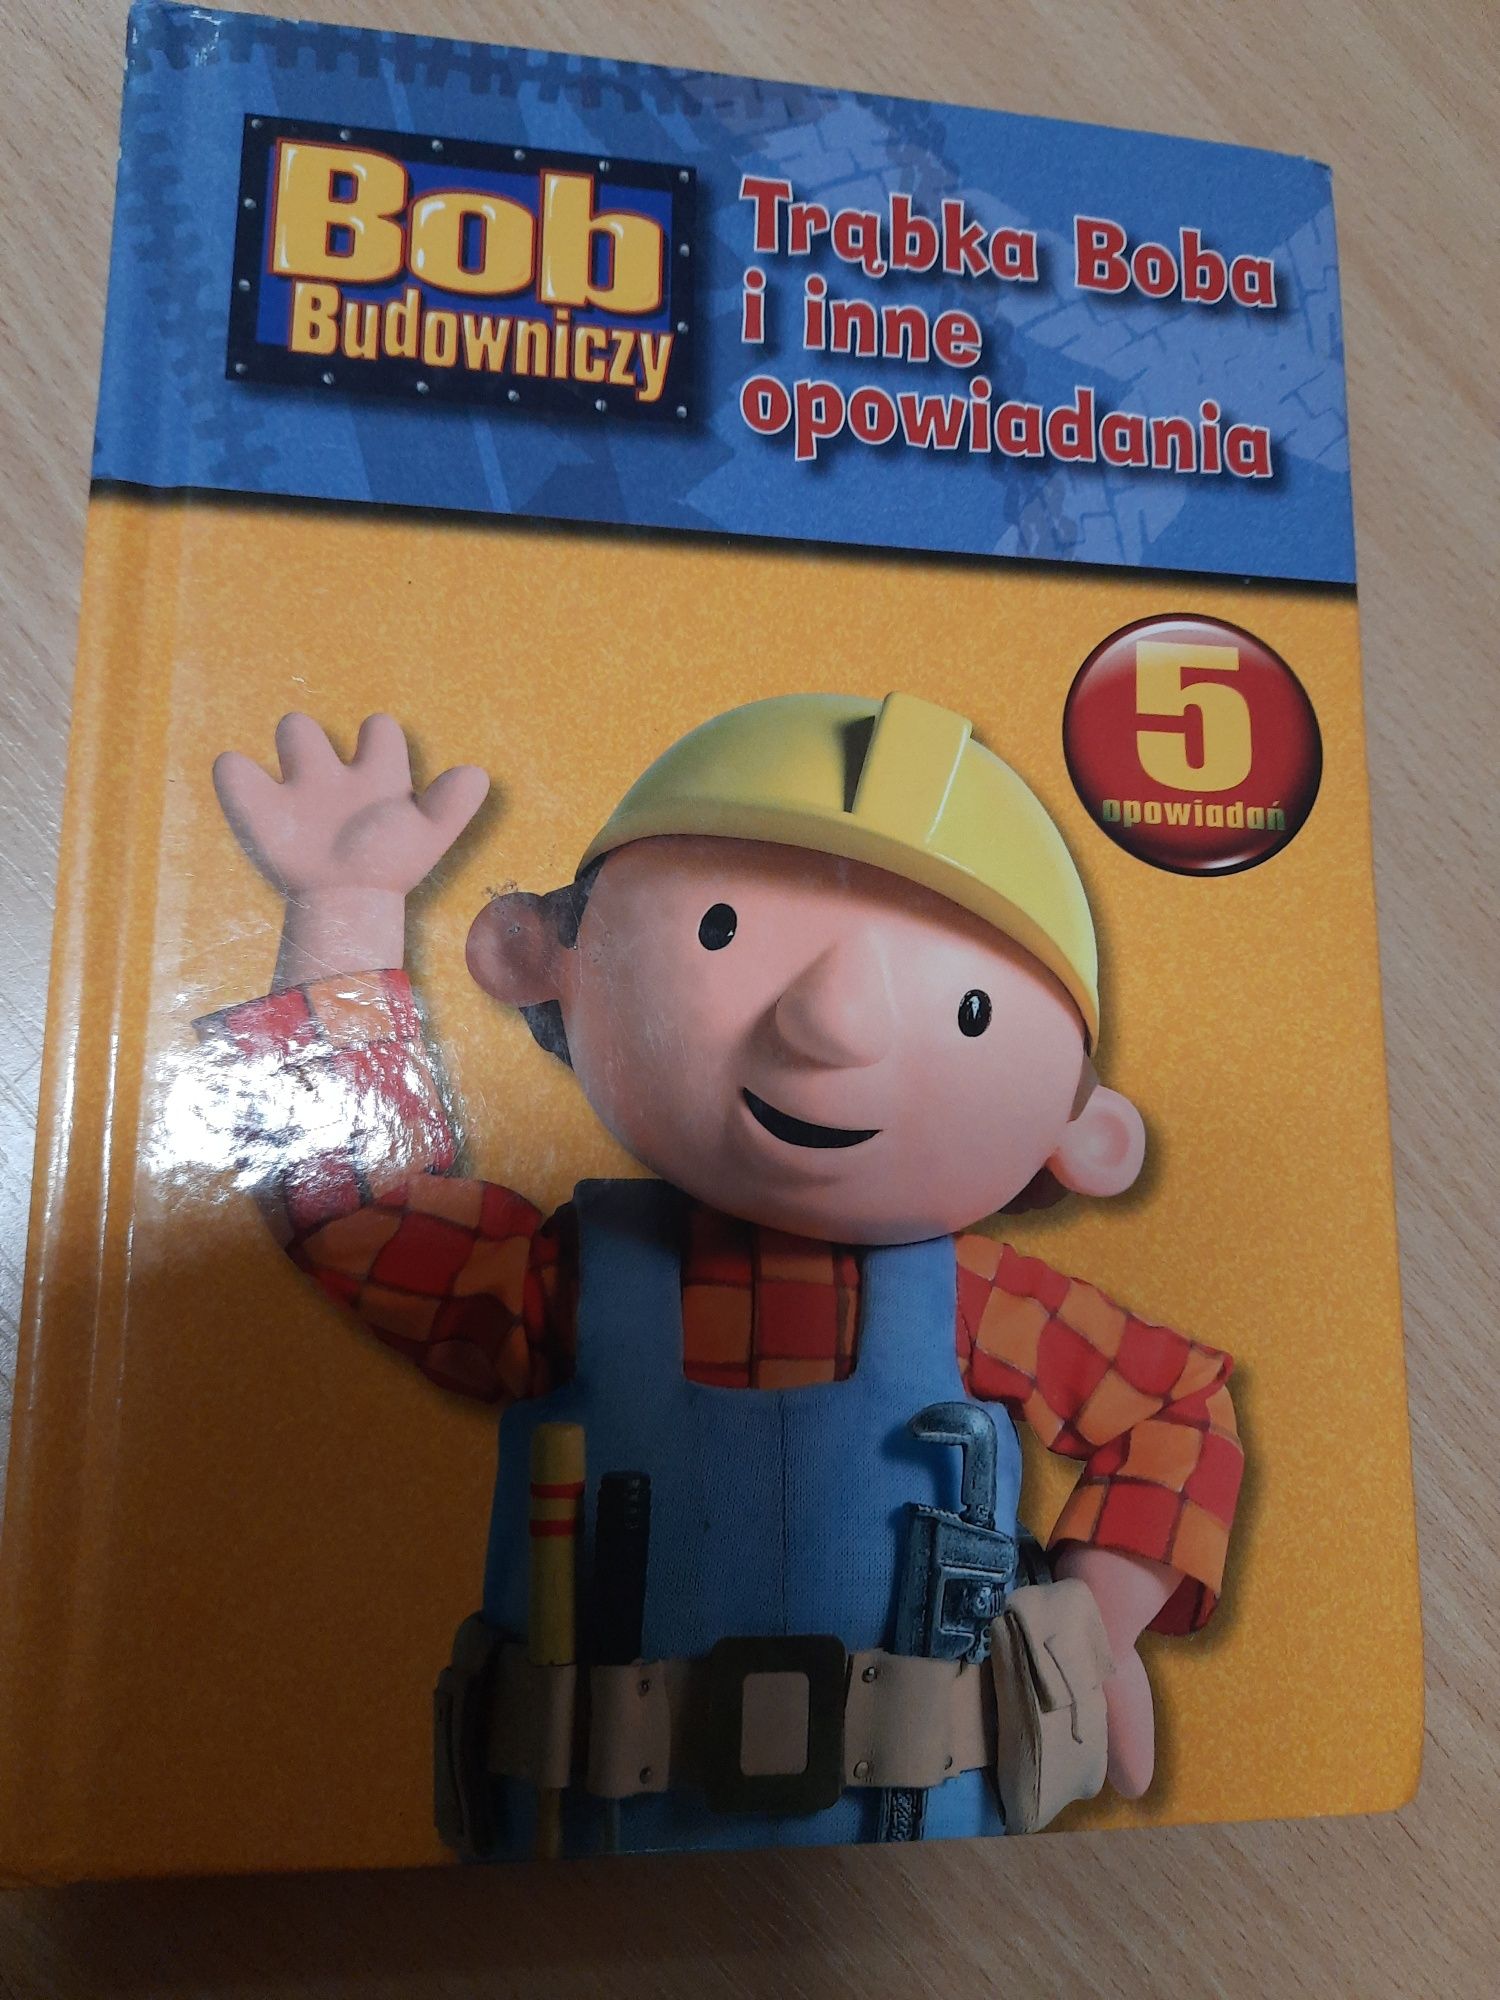 Bob Budowniczy - 5 opowiadania książka dla dzieci